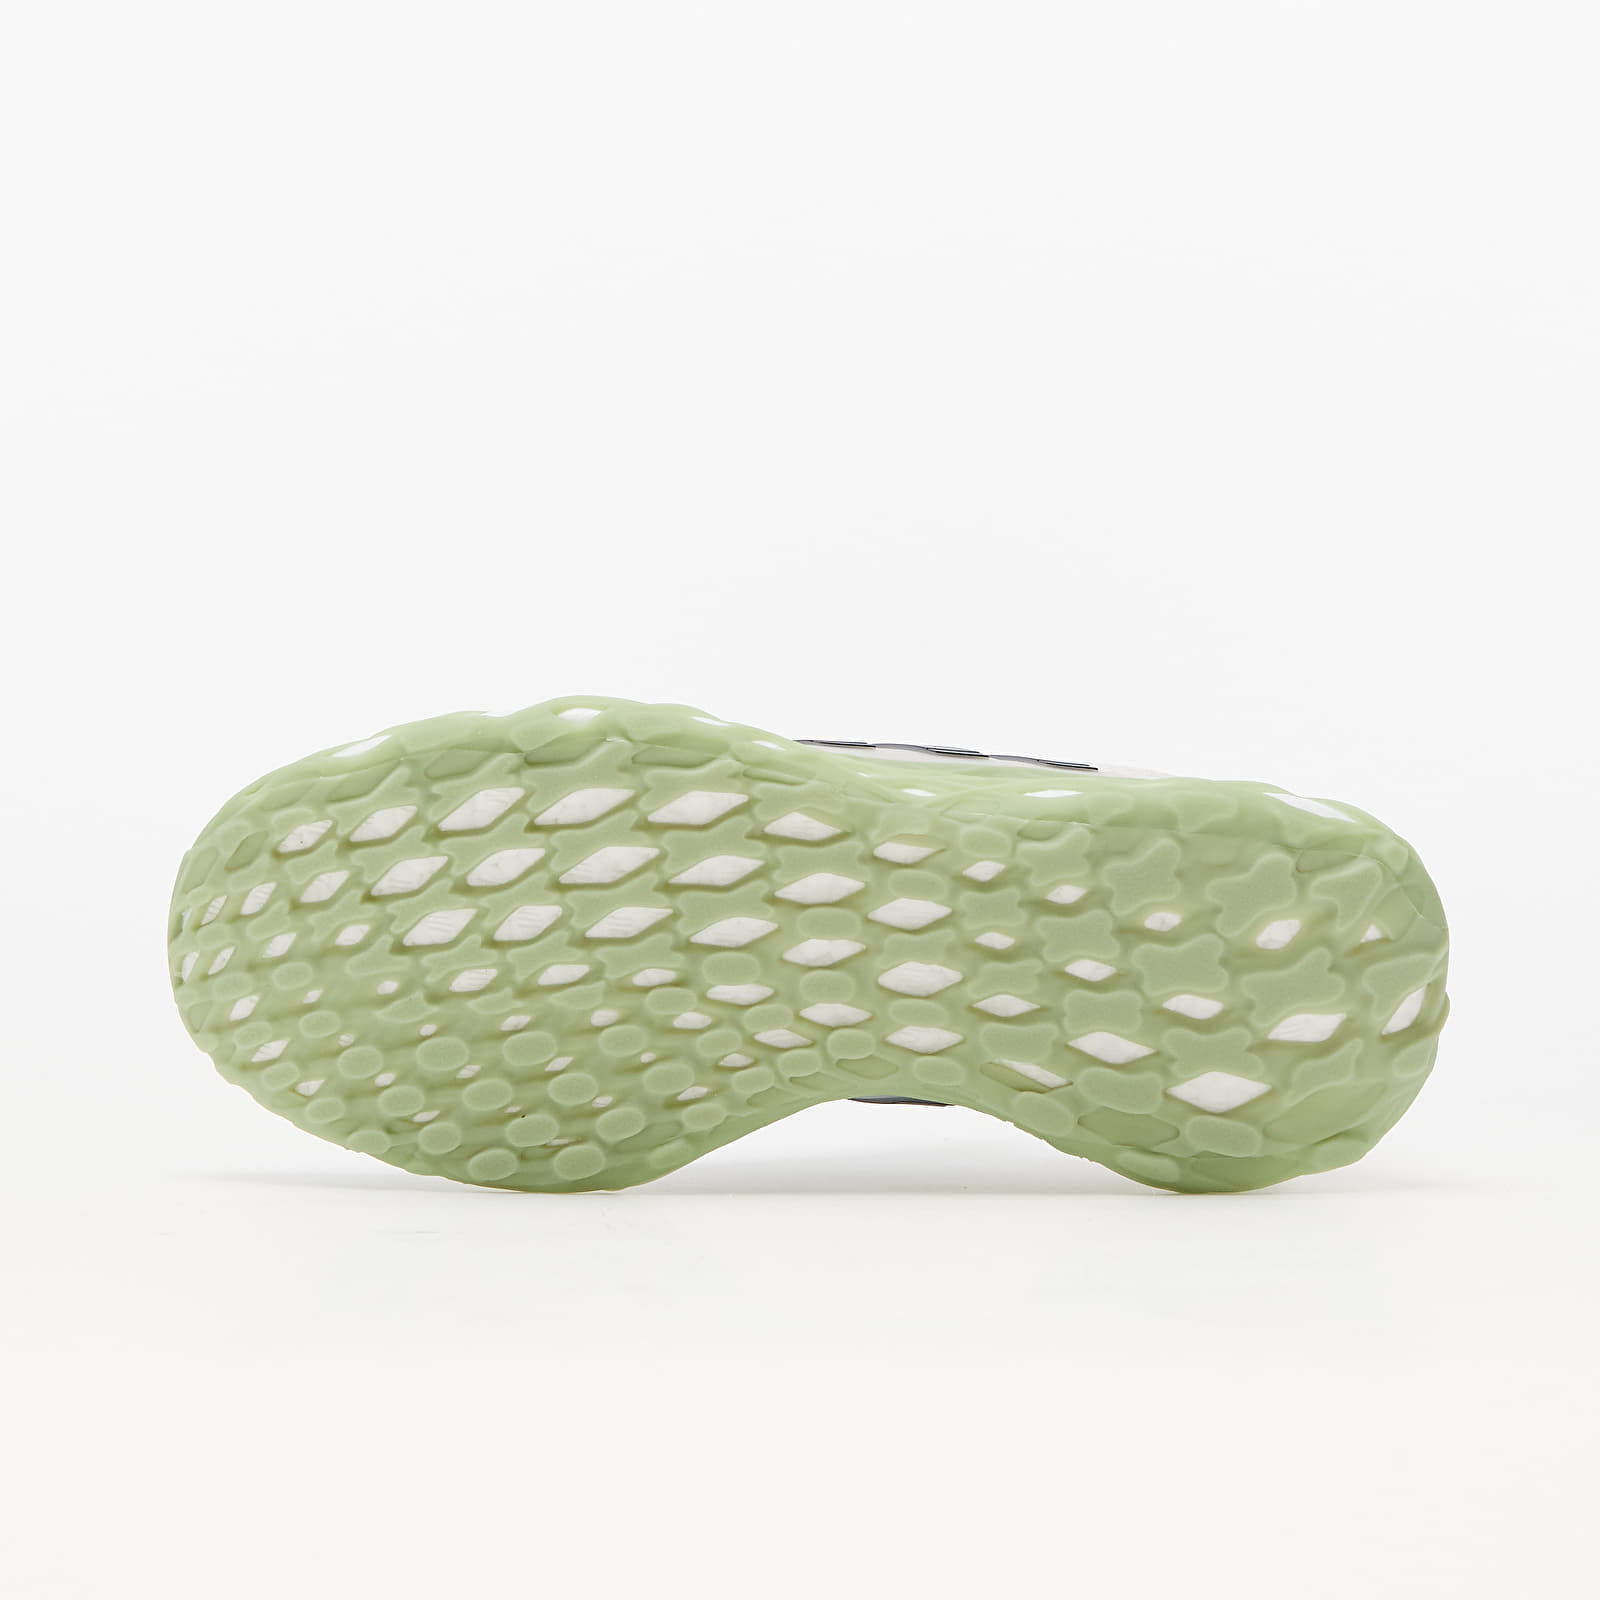 Men's shoes adidas UltraBOOST Web DNA Core White/ Carbon/ Orbit